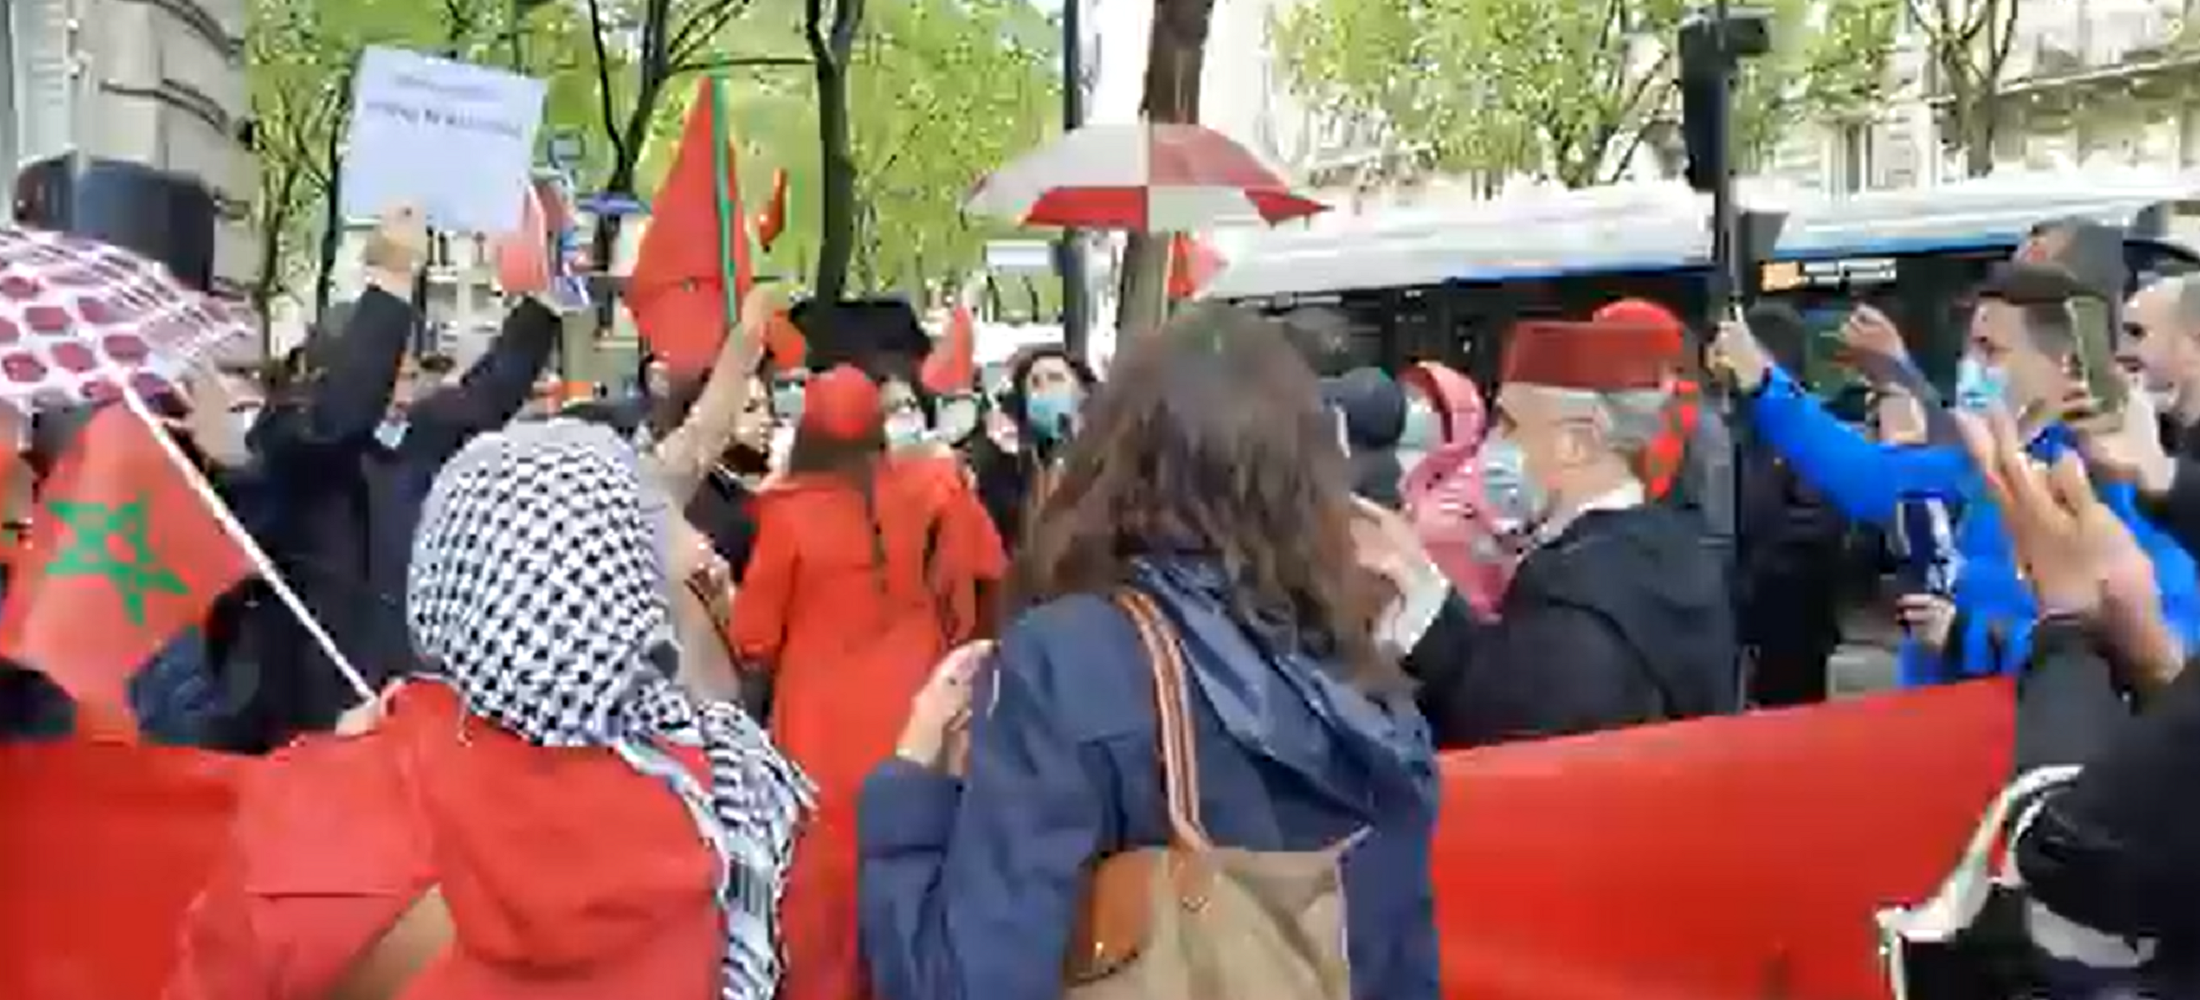 Manifestación de marroquíes delante de la embajada española en París